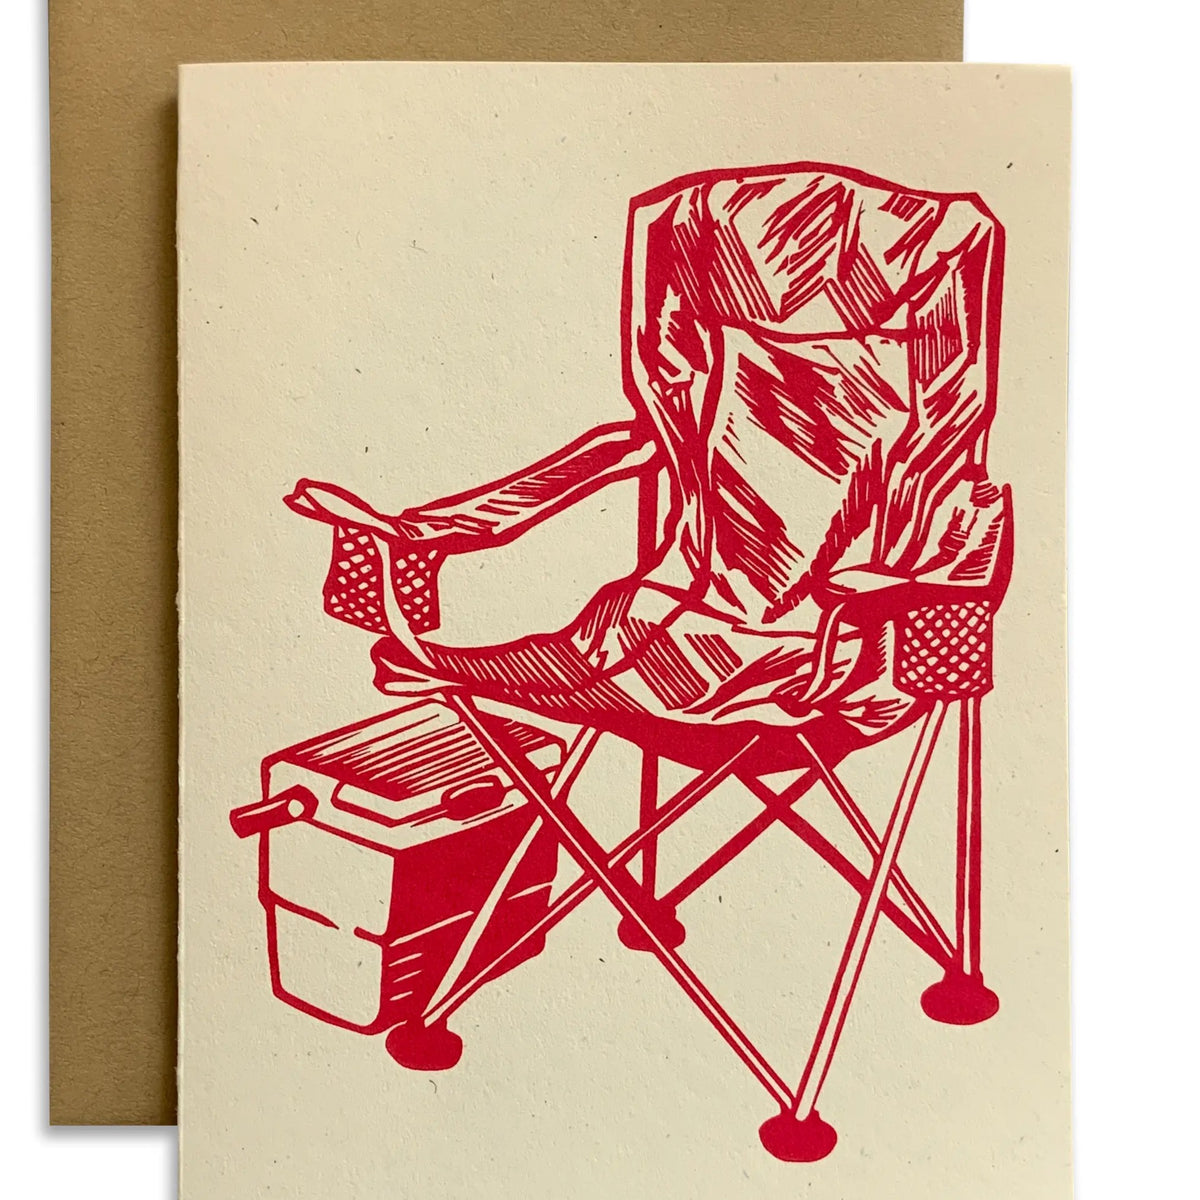 Camp Chair Card